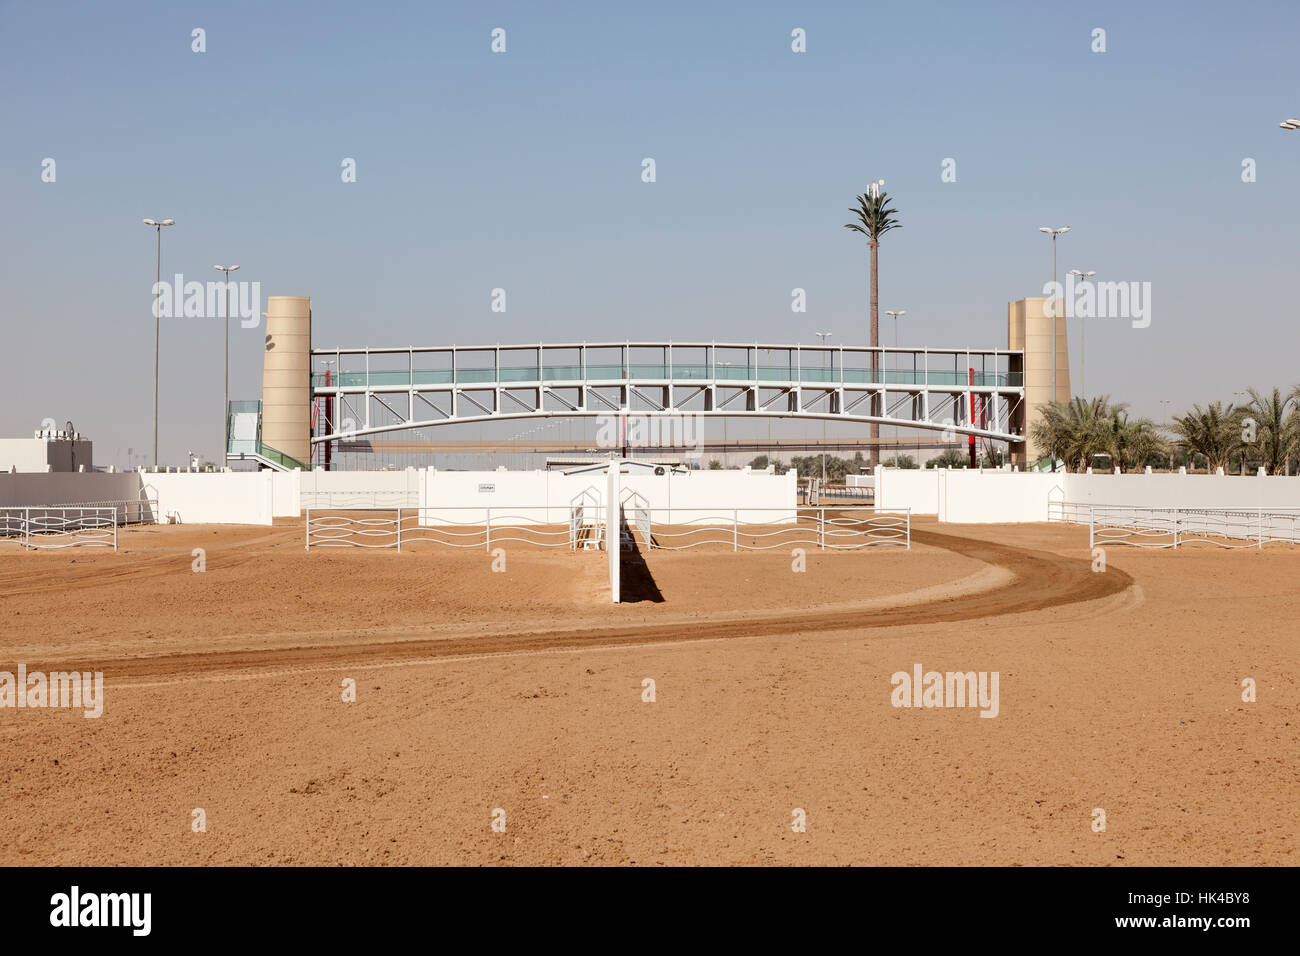 Bien sûr les courses de chameaux à Dubai, UAE Banque D'Images